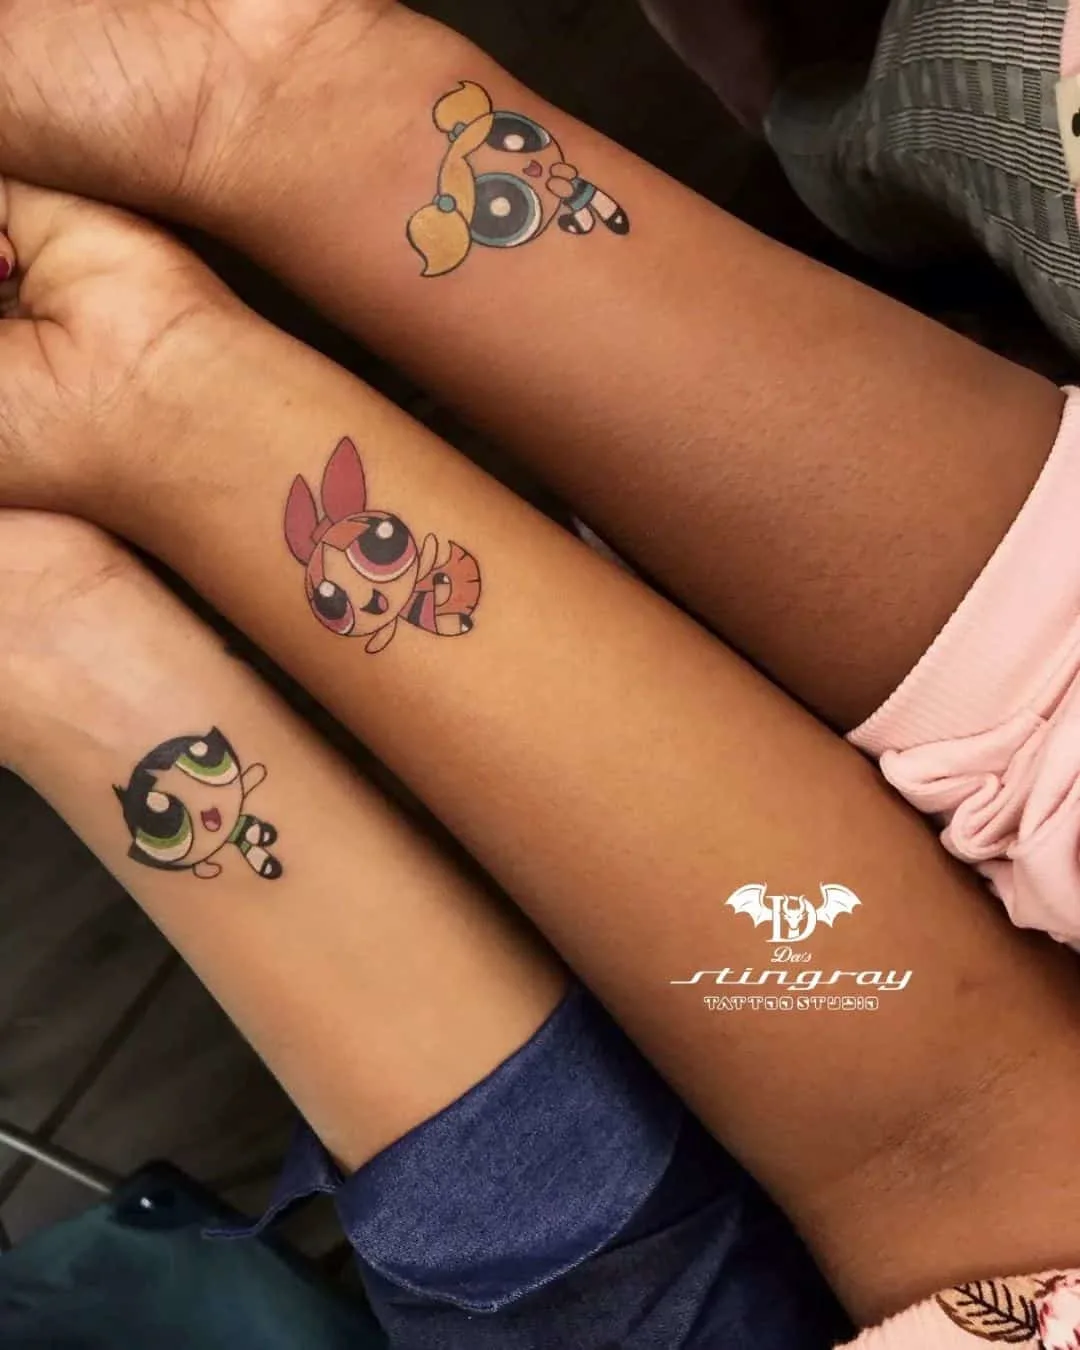 The Powerpuff Girls lovely matching tattoos for girl best friends